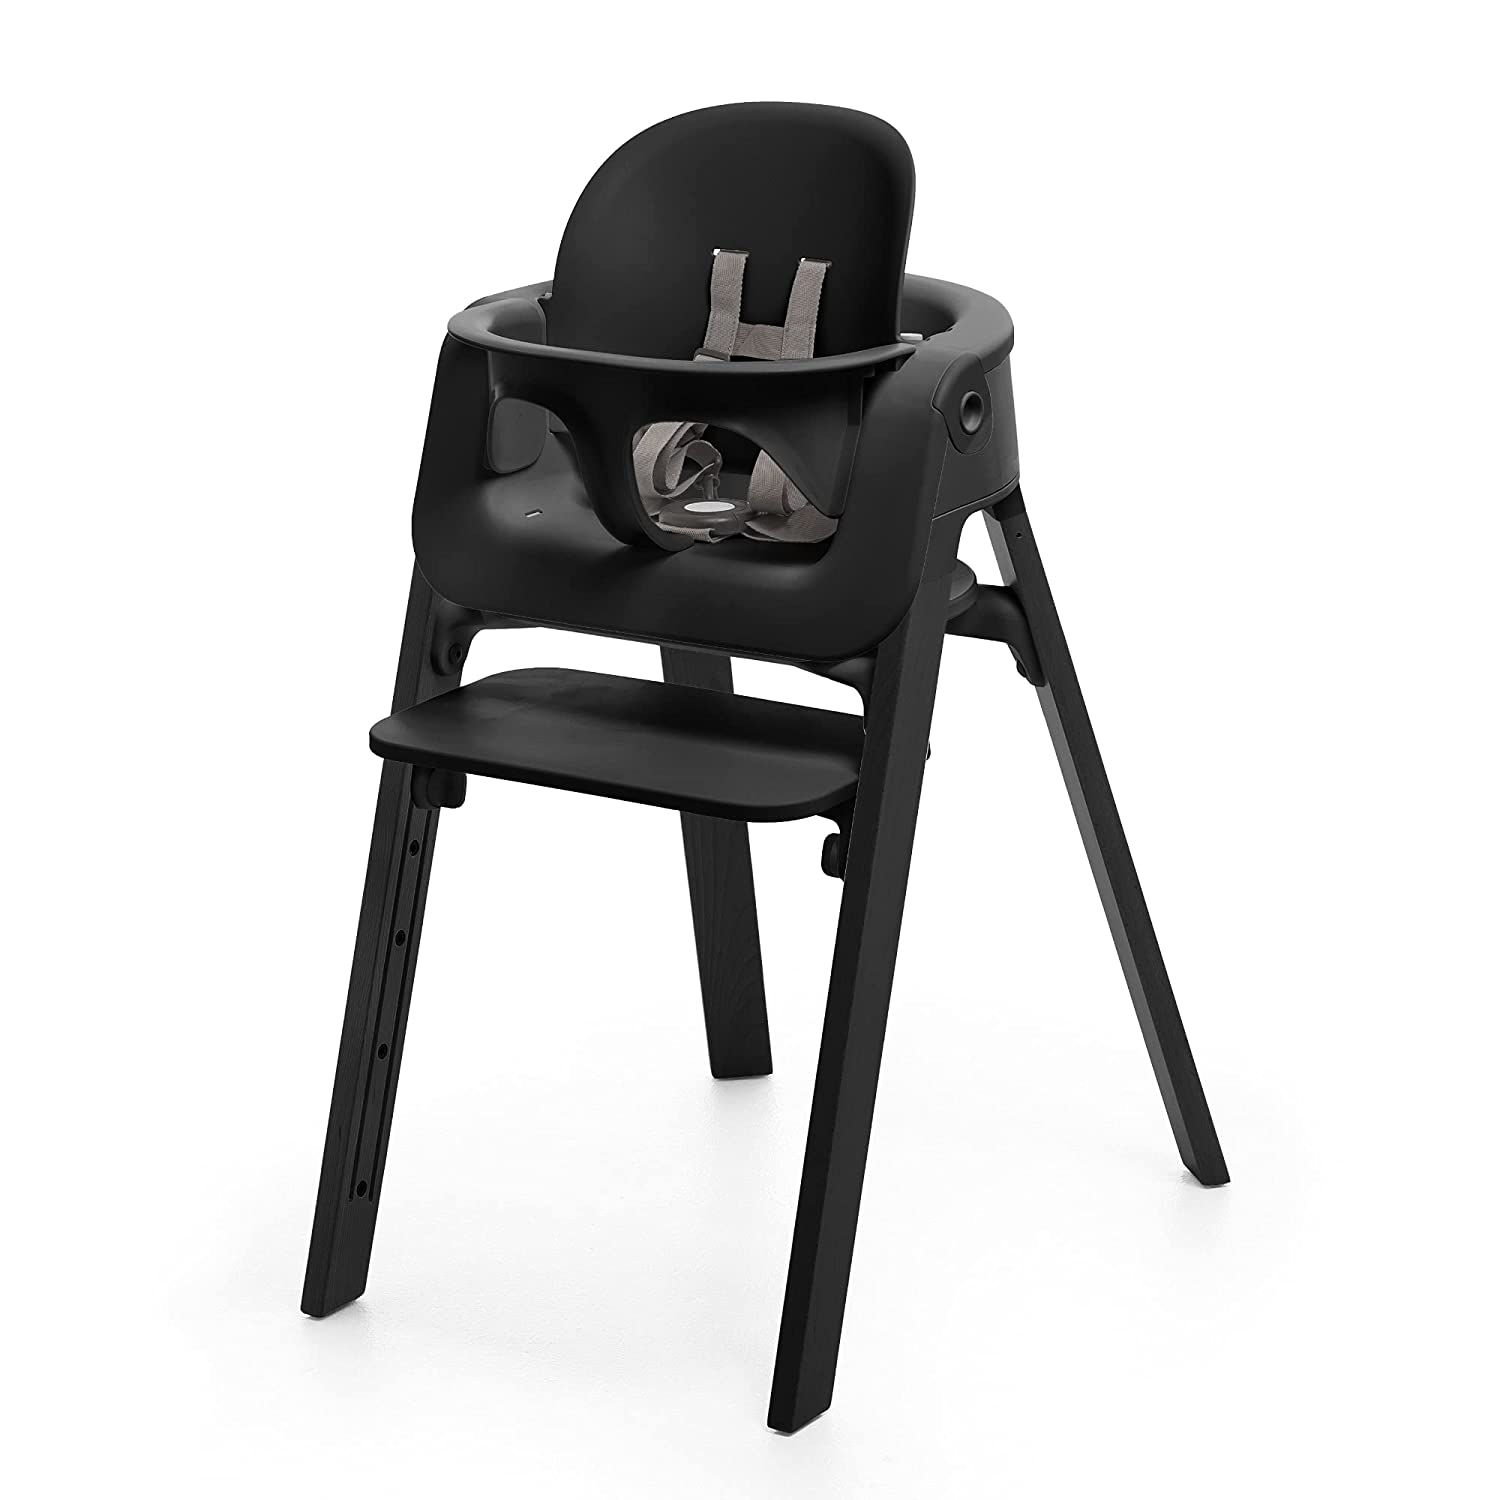 L'importance de la conception ergonomique des chaises hautes : favoriser une bonne posture pour les bébés